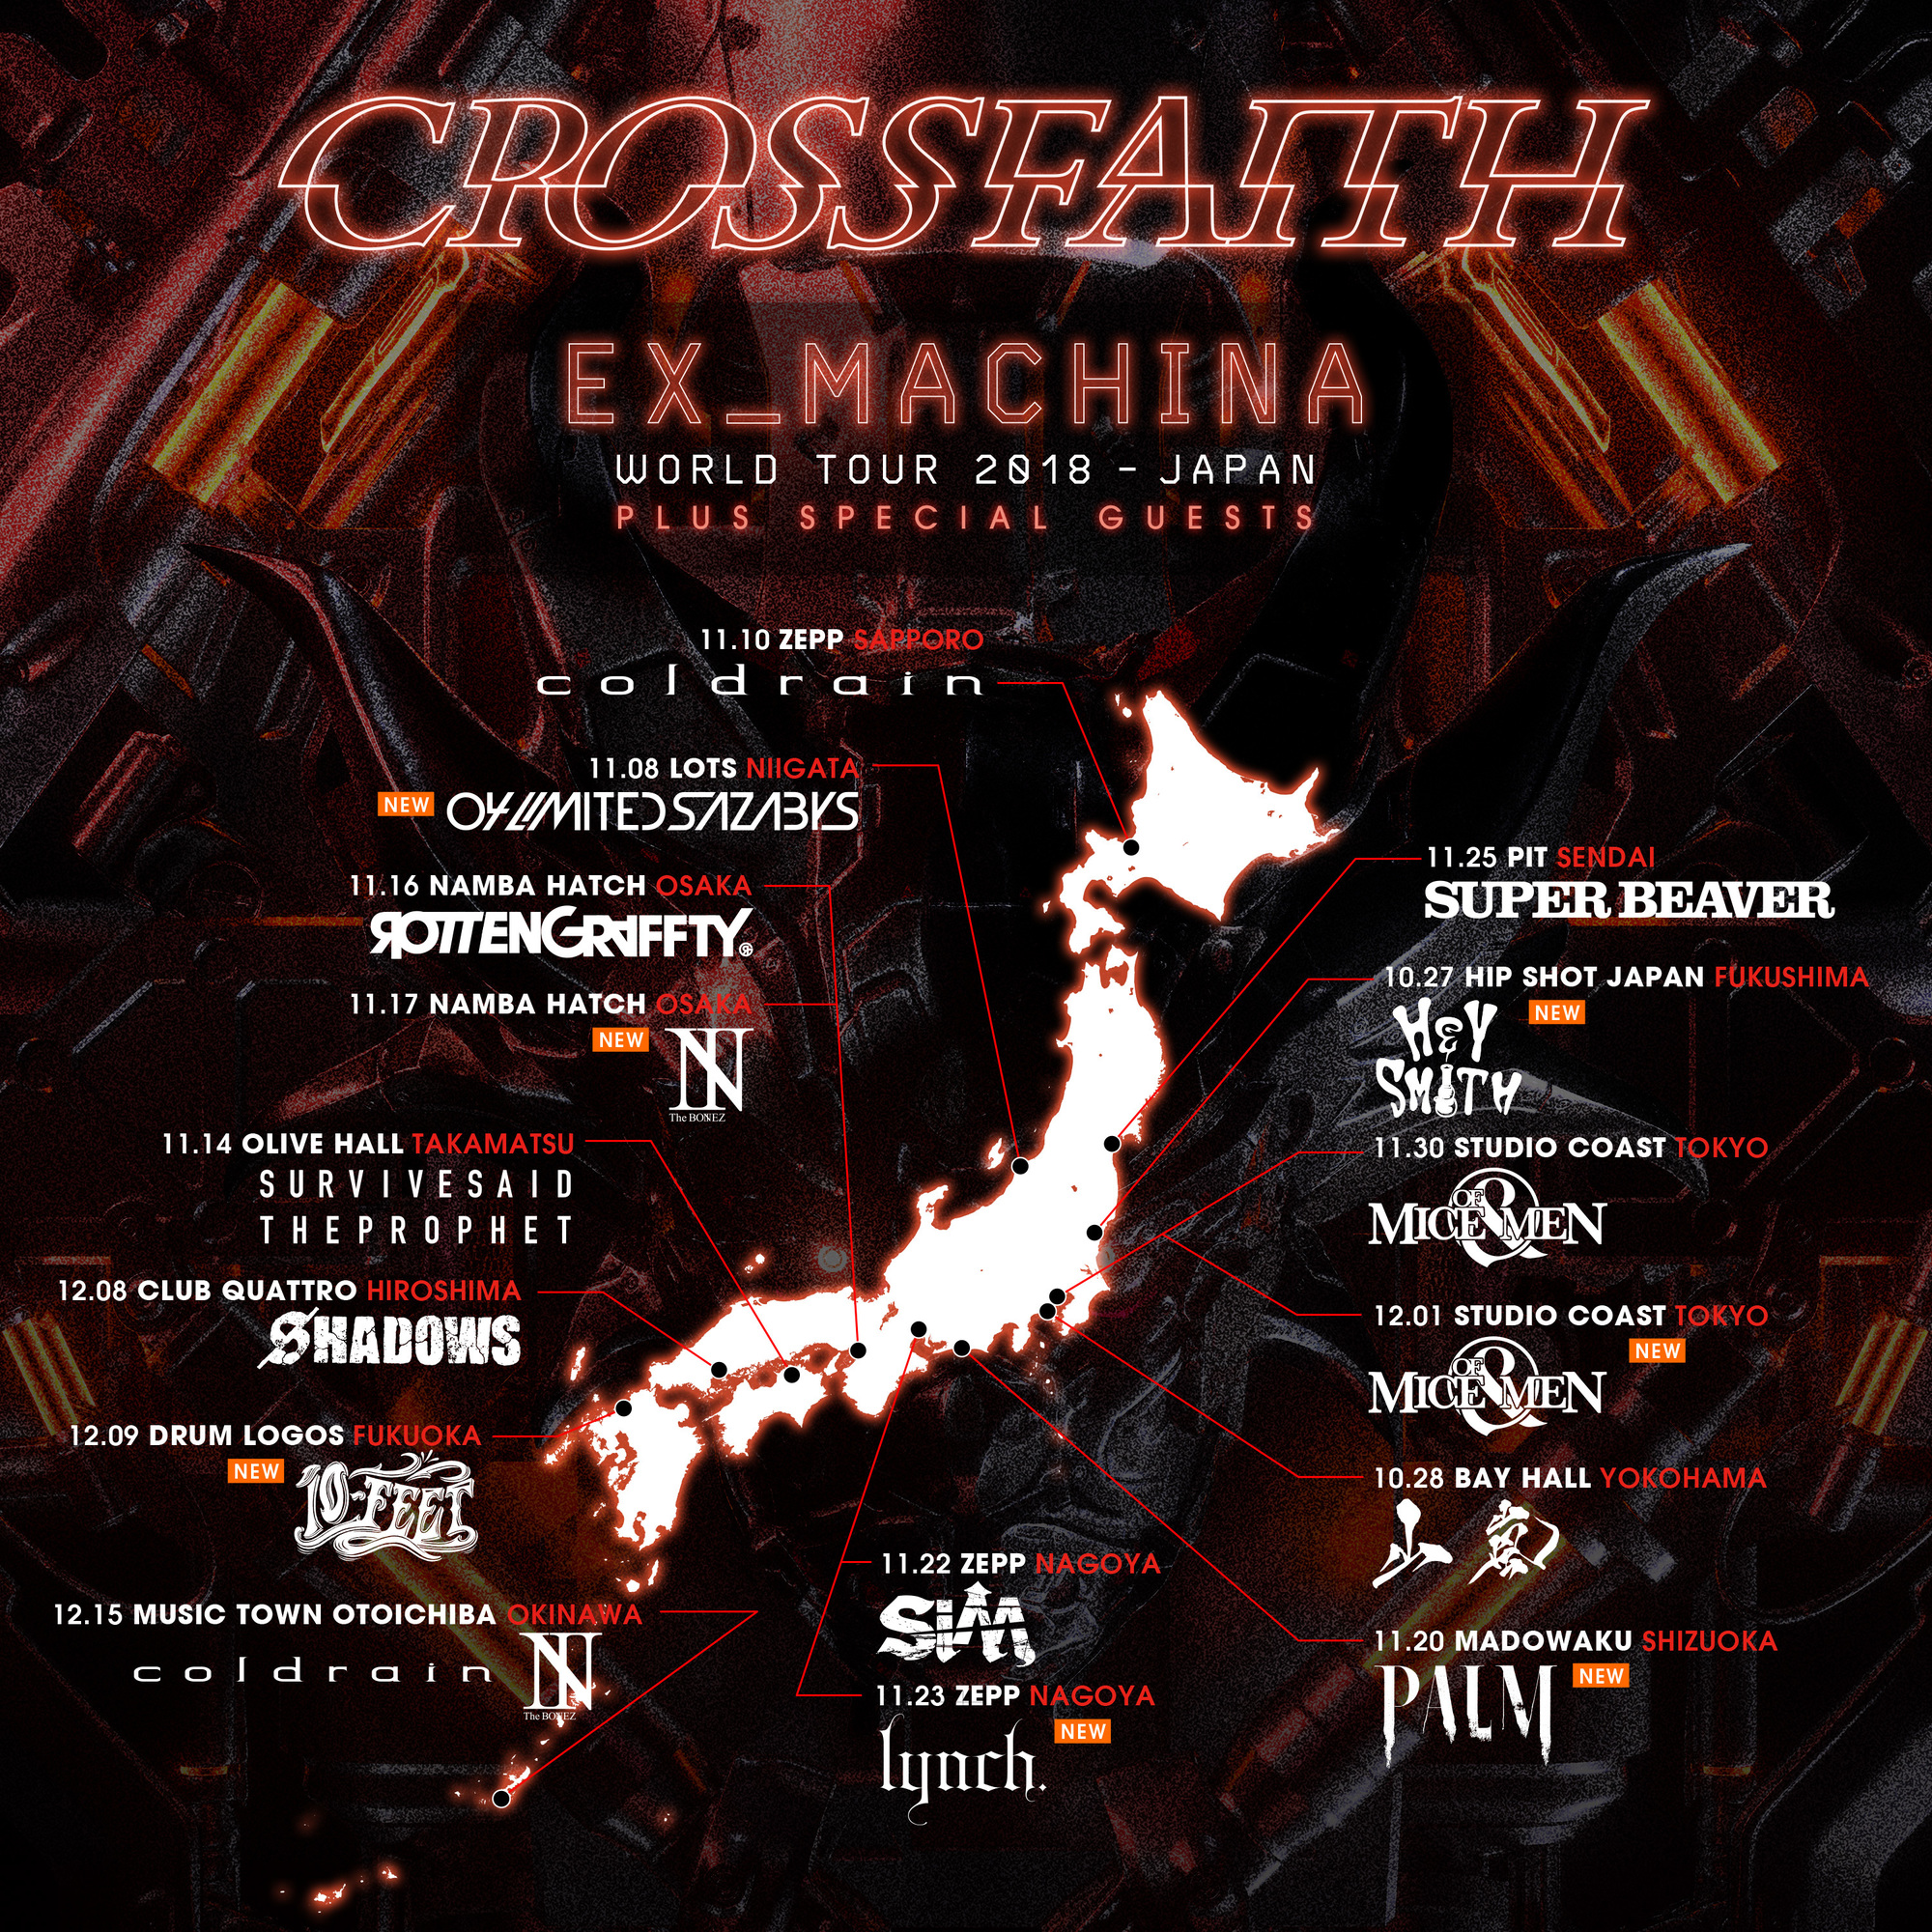 12 9 日 Crossfaith World Tour 18 Japan 福岡drum Logos 10 Feet Official Web Site